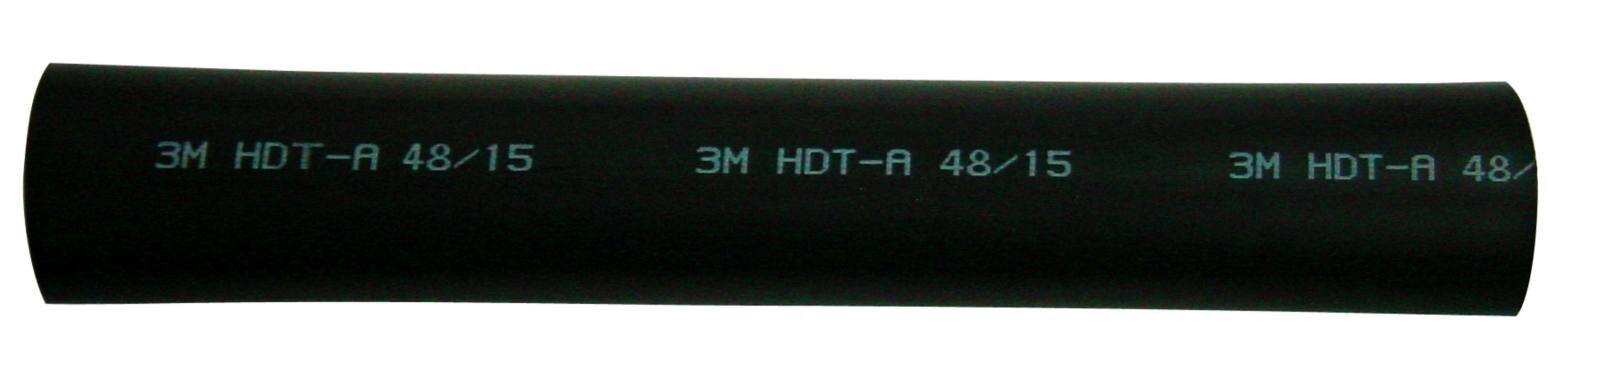 3M HDT-A Tubo termorretráctil de pared gruesa con adhesivo, negro, 85/26 mm, 1 m